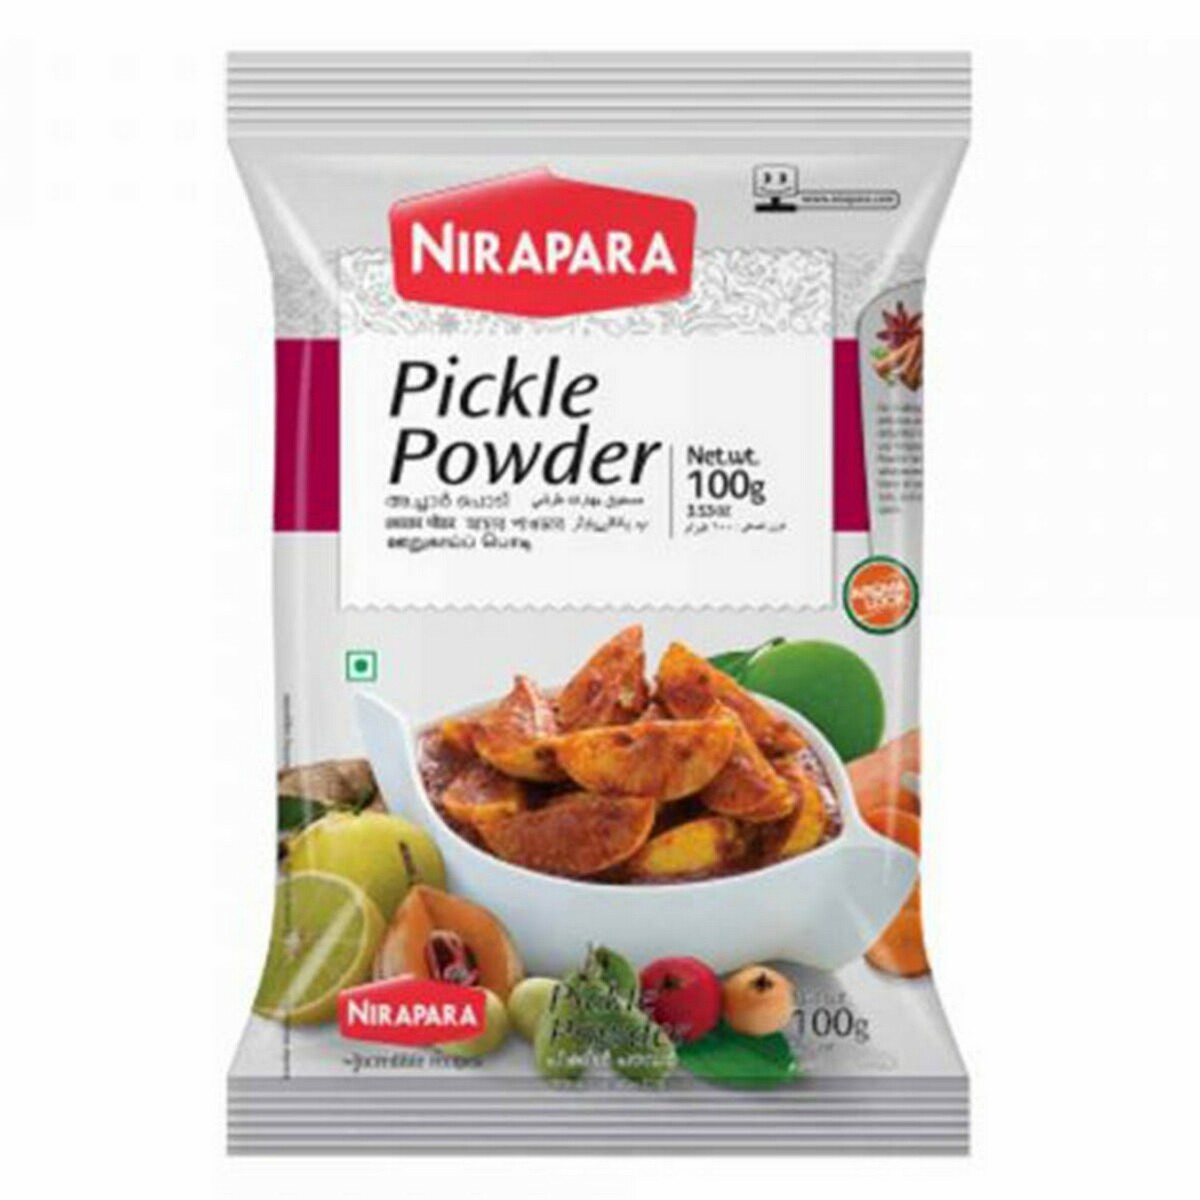 Nirapara Pickle Powder 100g